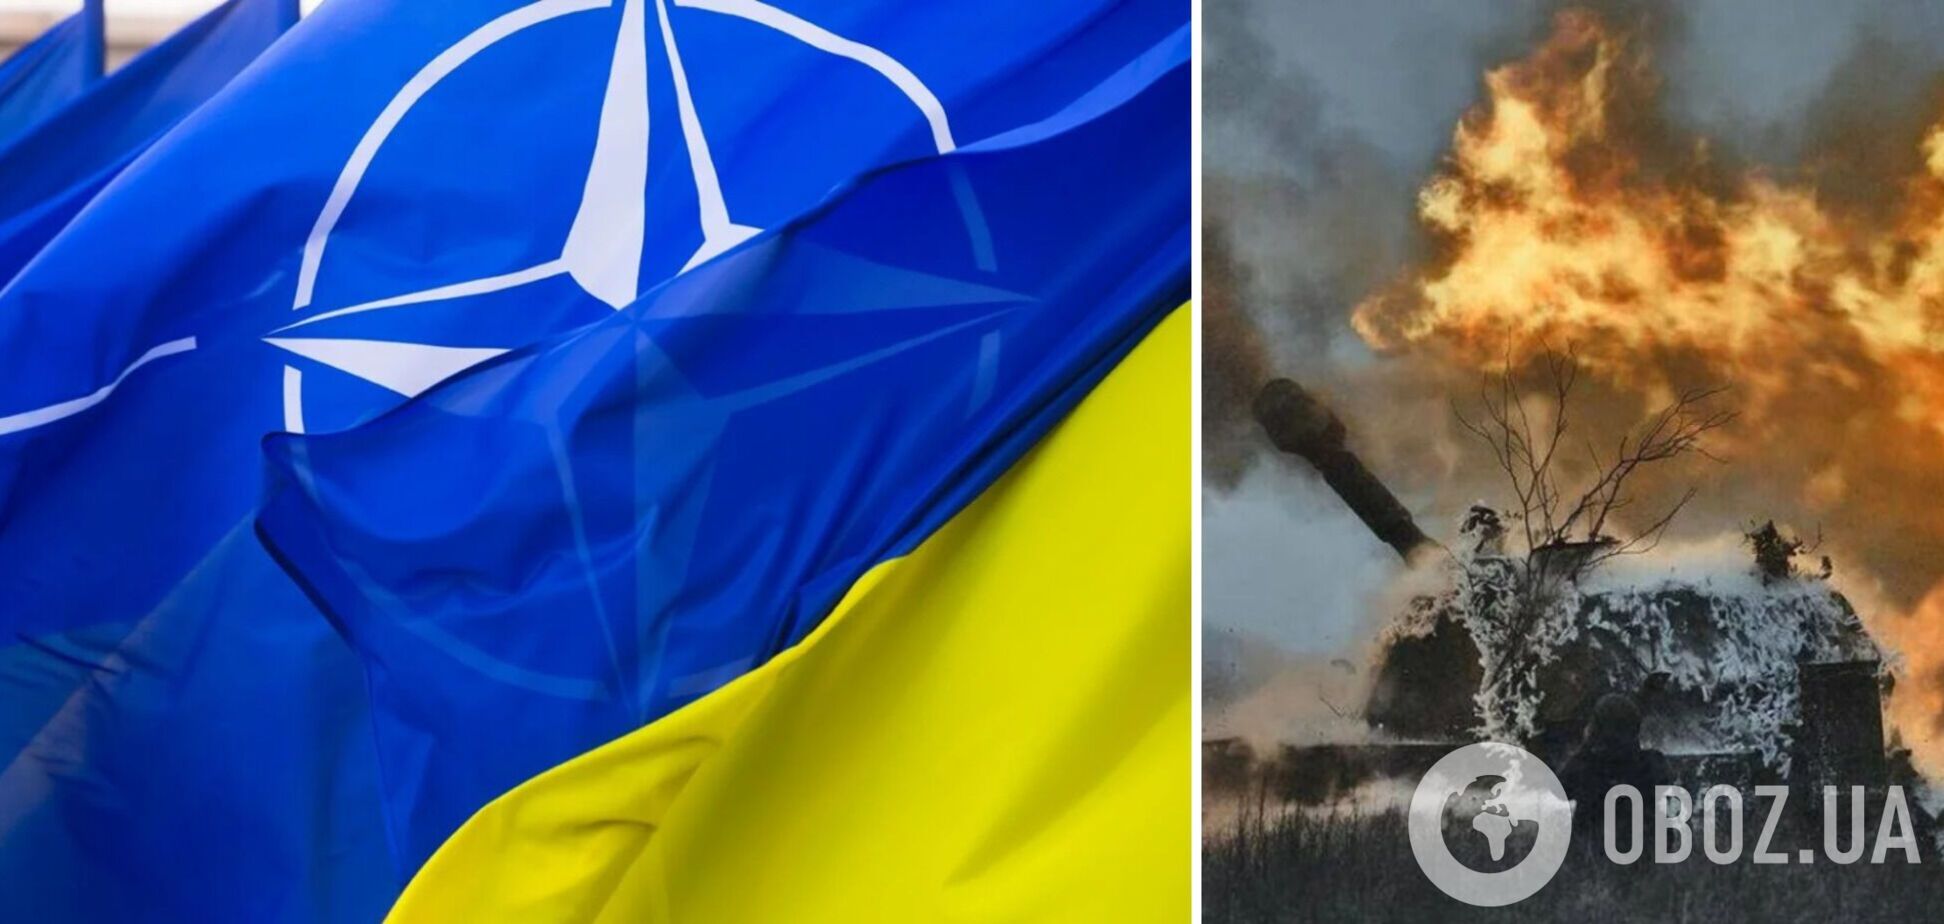 Утрата территорий vs вступление в НАТО: какие сценарии для Украины обсуждают на Западе и какой вариант поддерживают украинцы